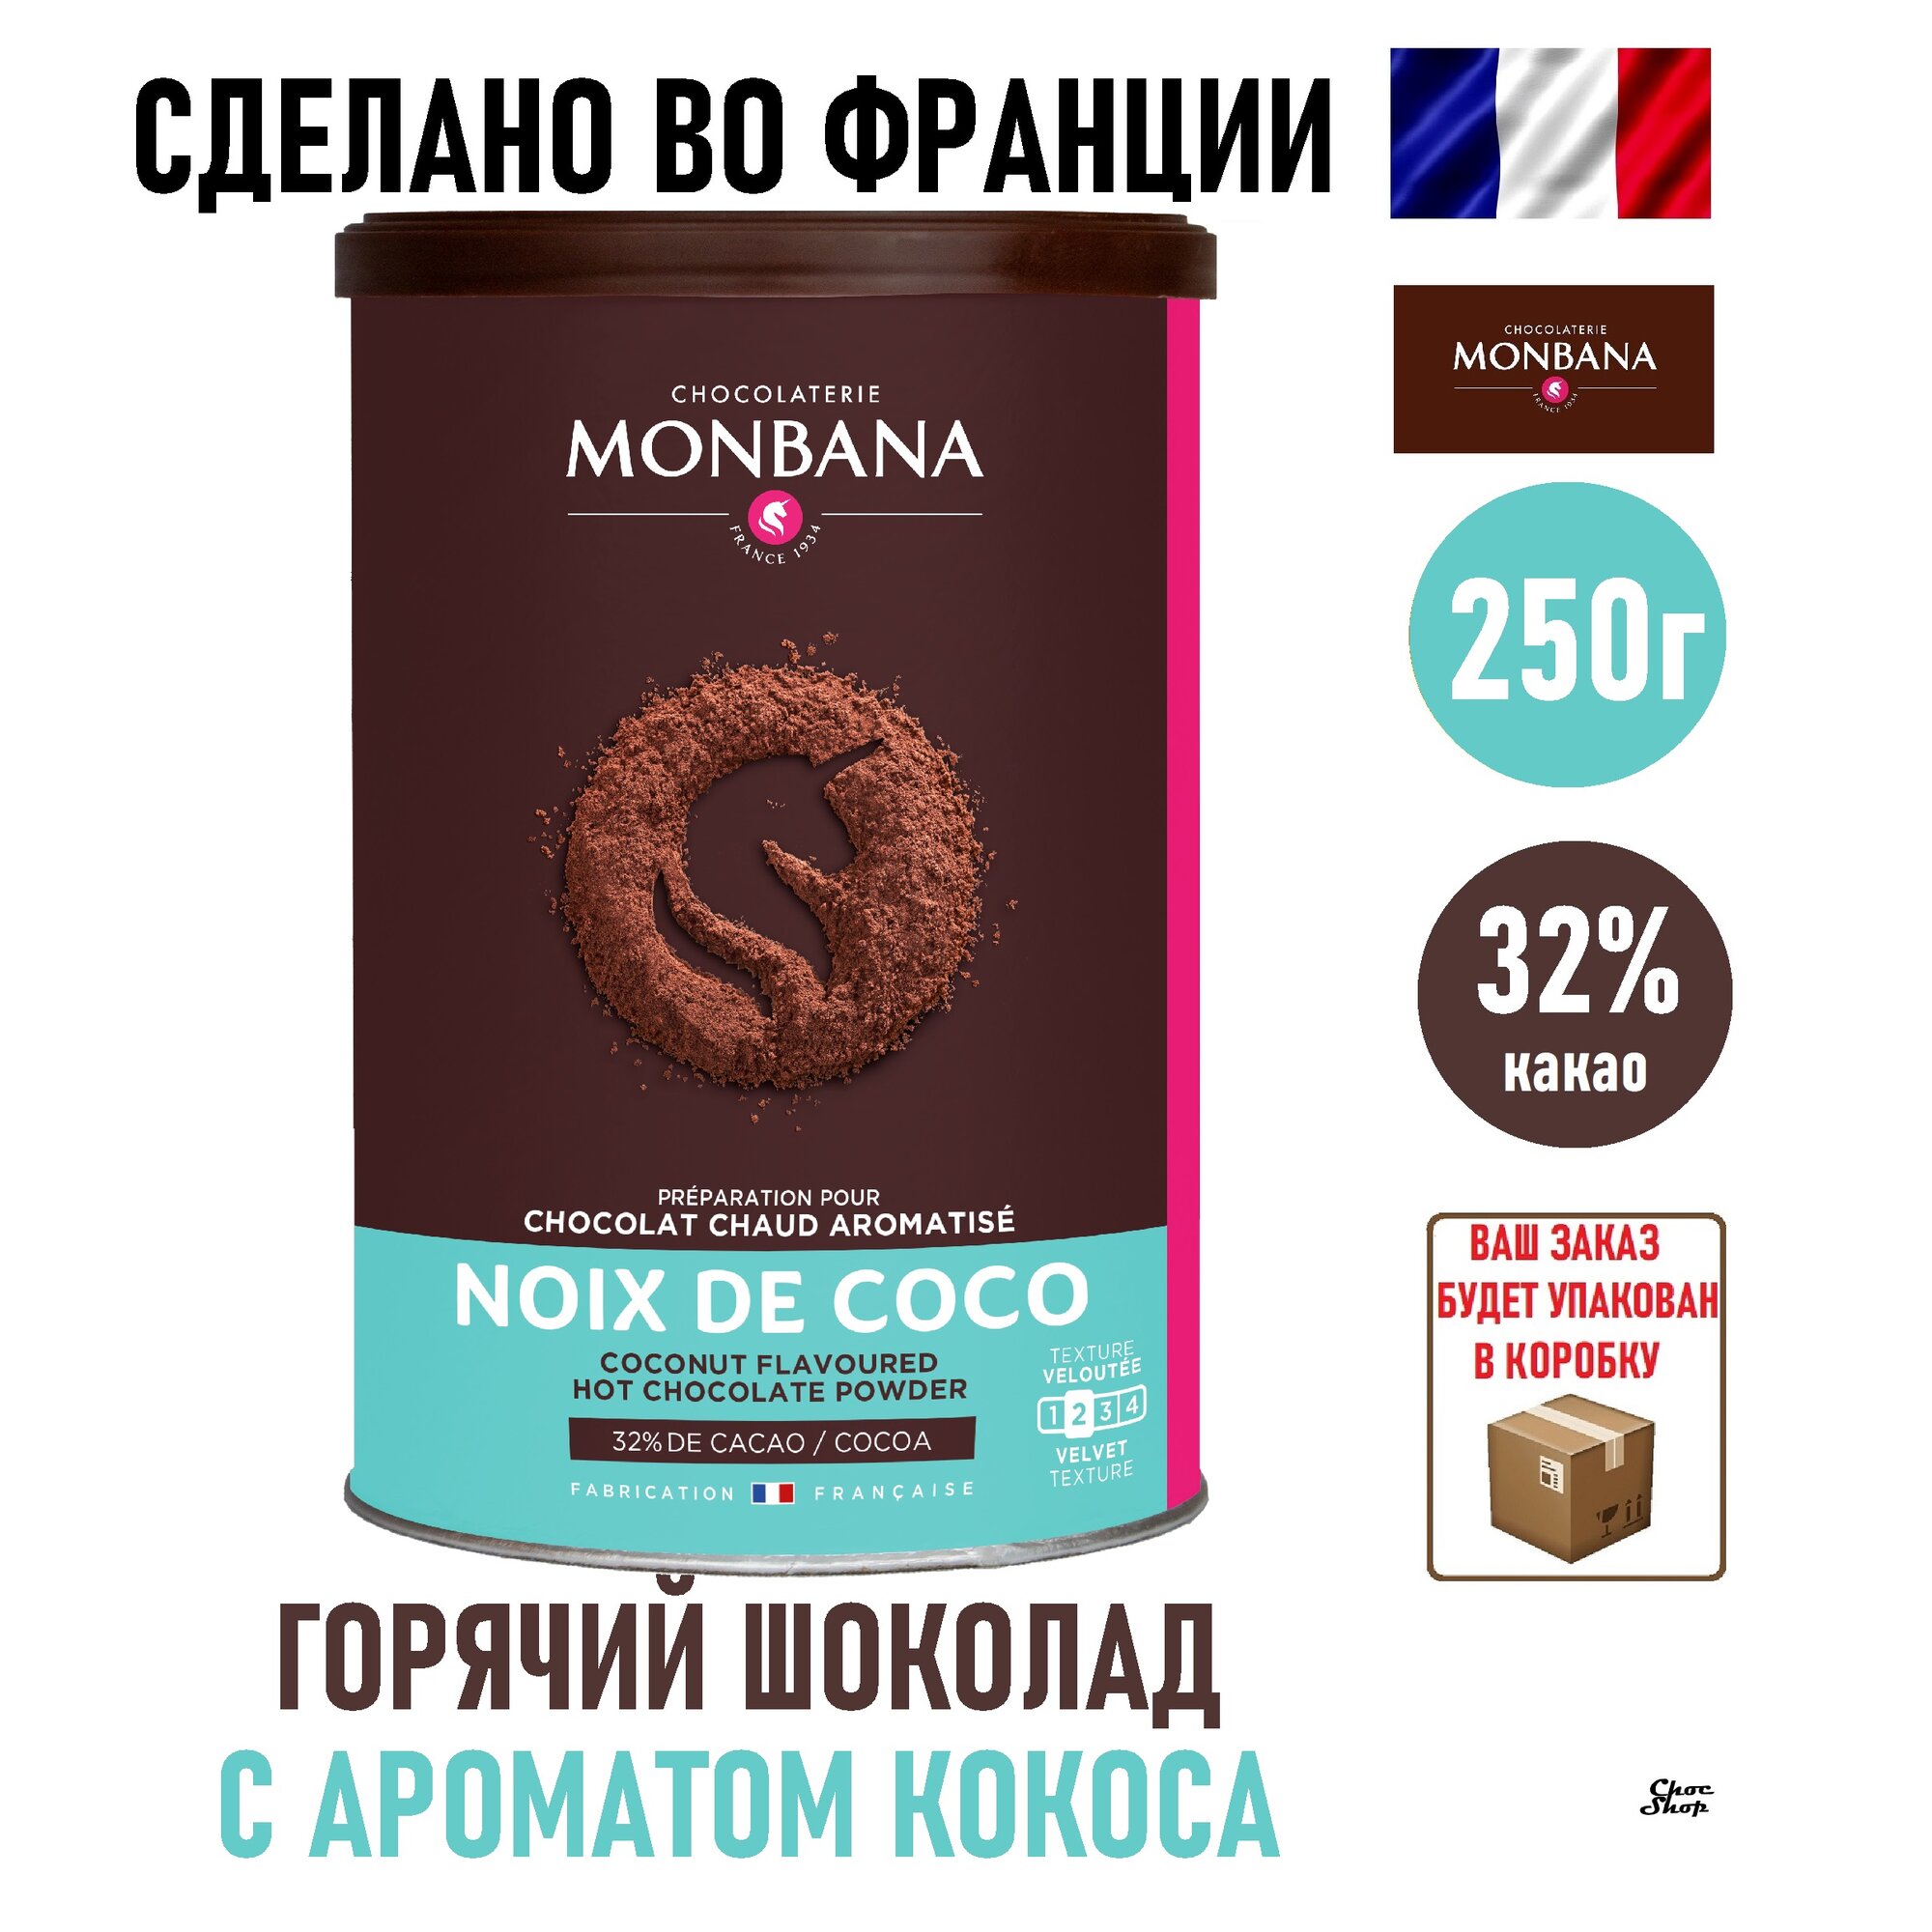 Французский горячий шоколад Monbana, какао с ароматом кокоса, нетто 250г